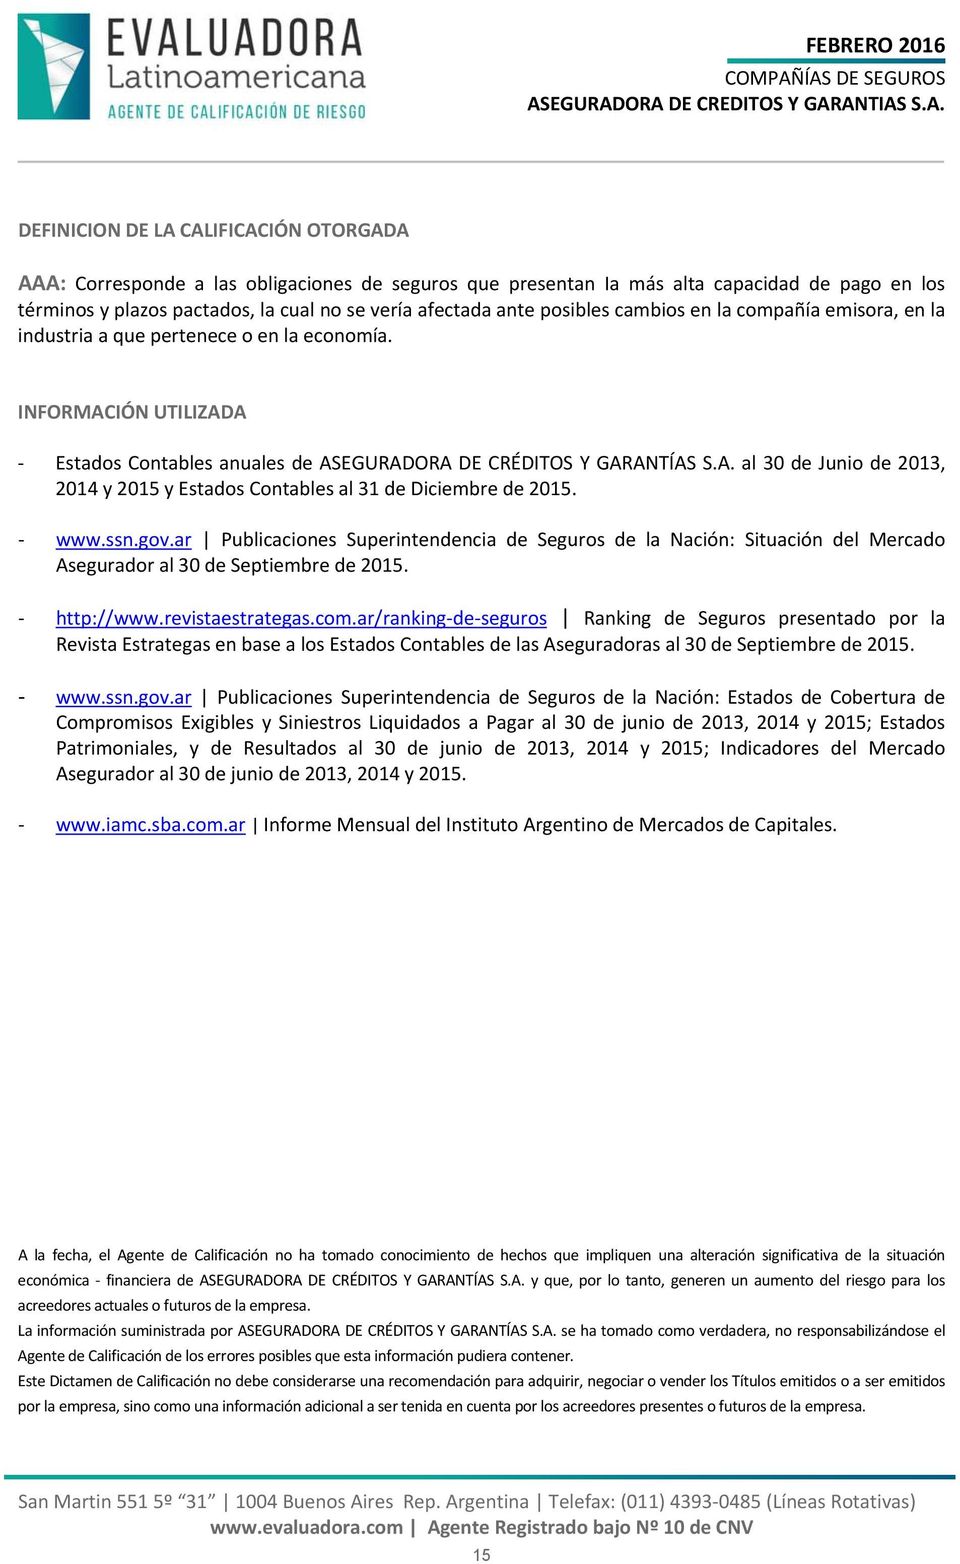 www.ssn.gov.ar Publicaciones Superintendencia de Seguros de la Nación: Situación del Mercado Asegurador al 30 de Septiembre de 2015. http://www.revistaestrategas.com.